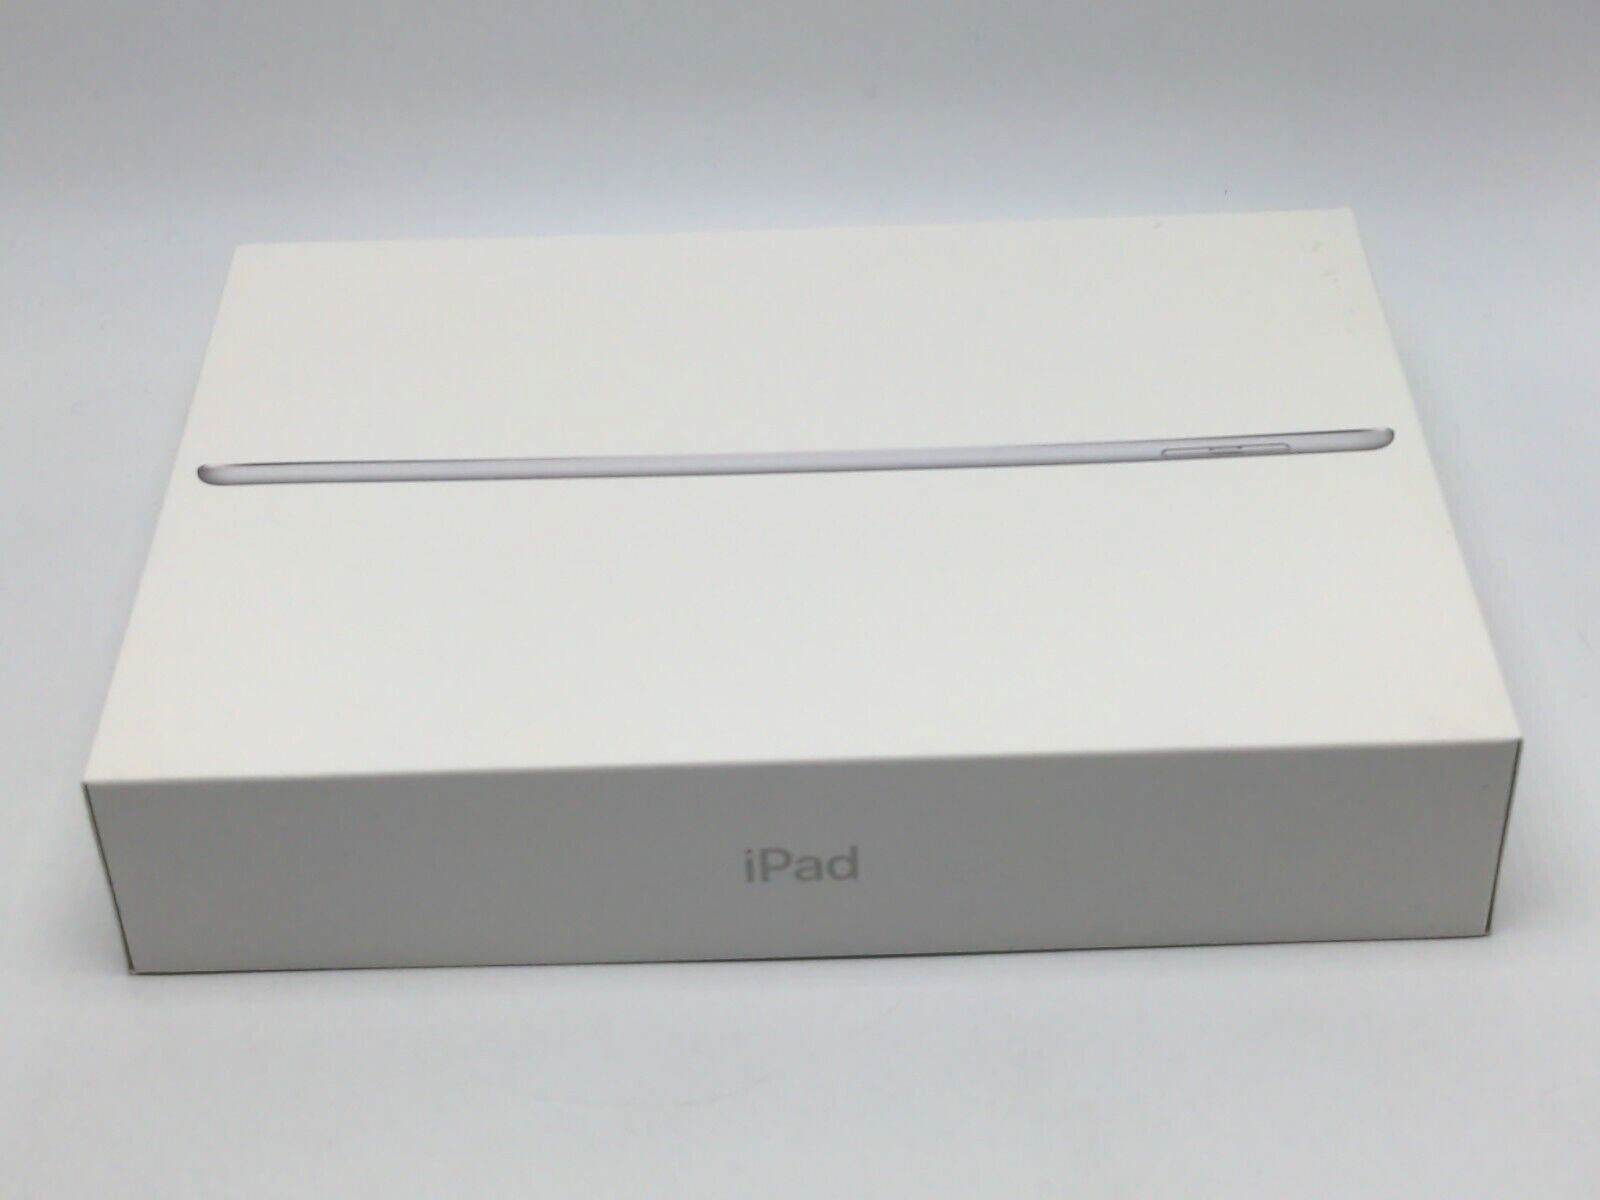 Apple iPad 6th Generation Wi-Fi 32GB Silver A1893 *EMPTY BOX ONLY* MR7G2LL/A